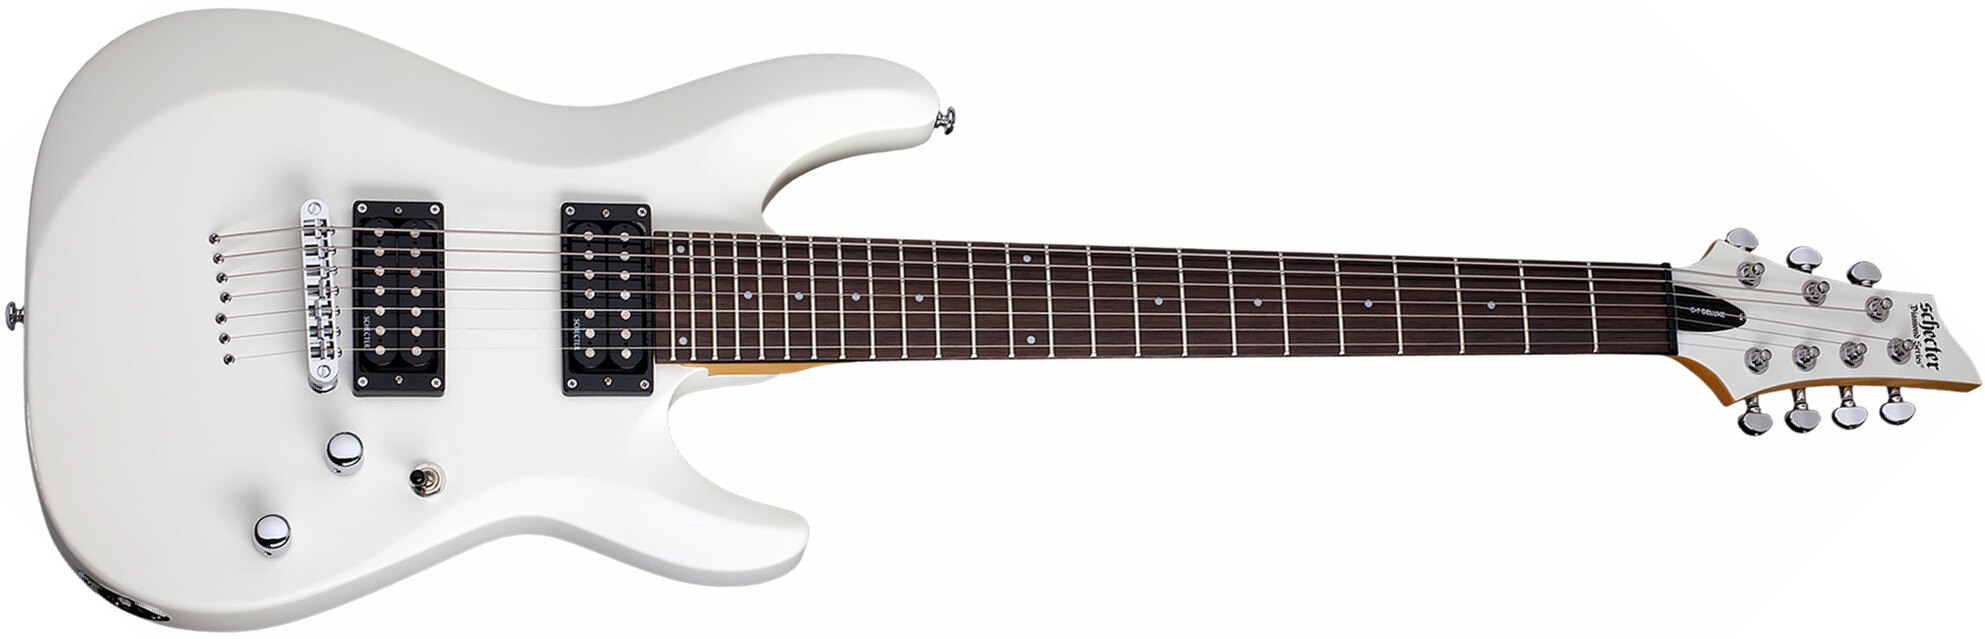 Schecter C-7 Deluxe 7c 2h Ht Rw - Satin White - 7-saitige E-Gitarre - Main picture